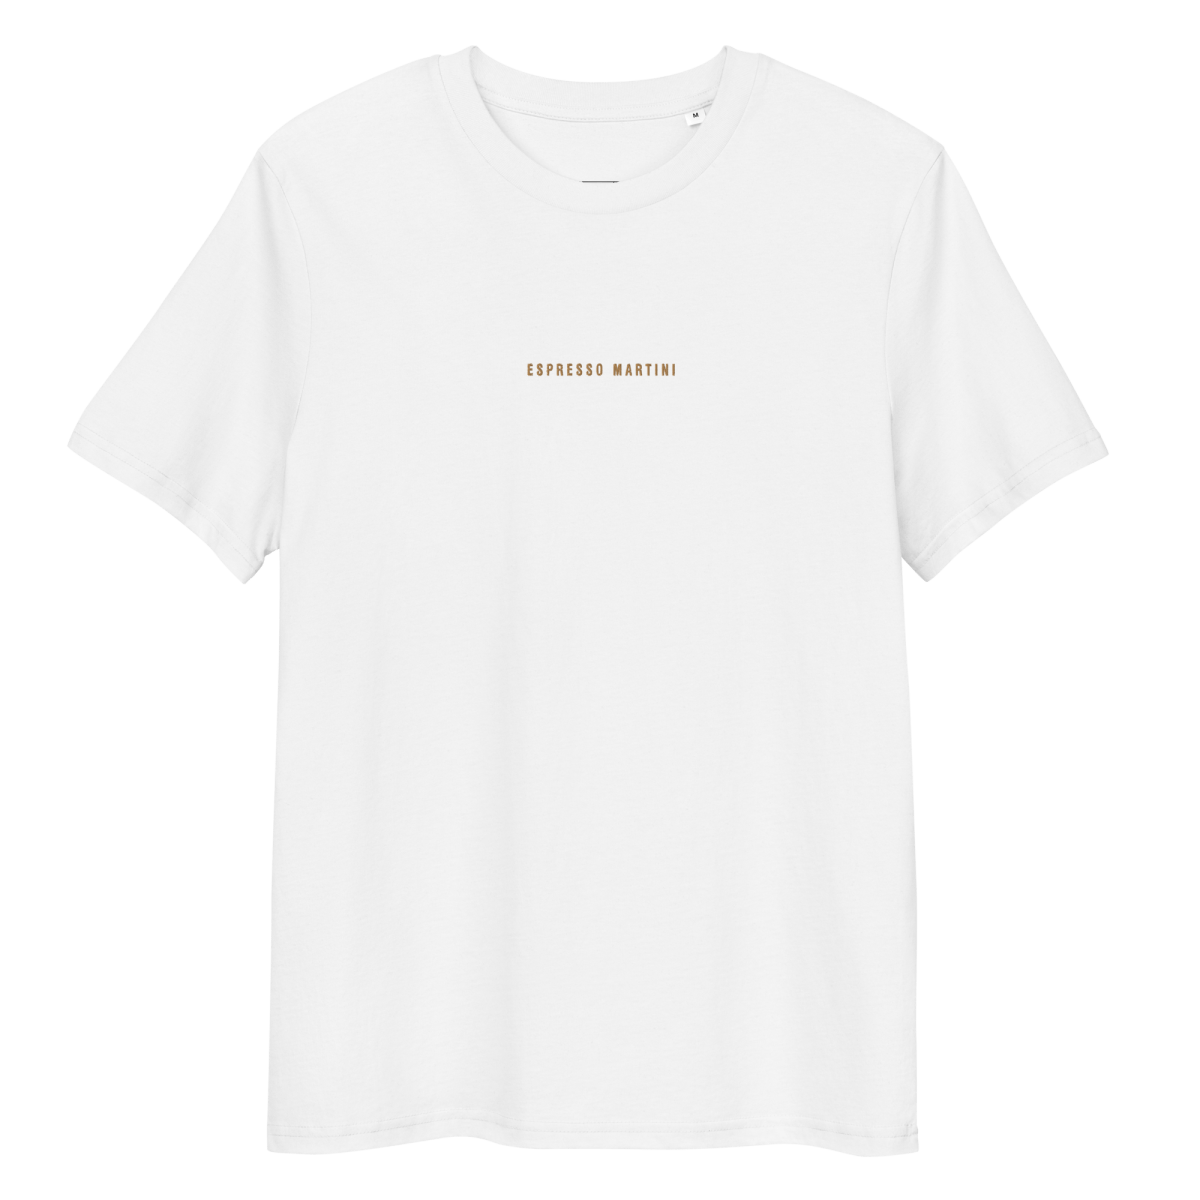 Het Espresso Martini bio t-shirt